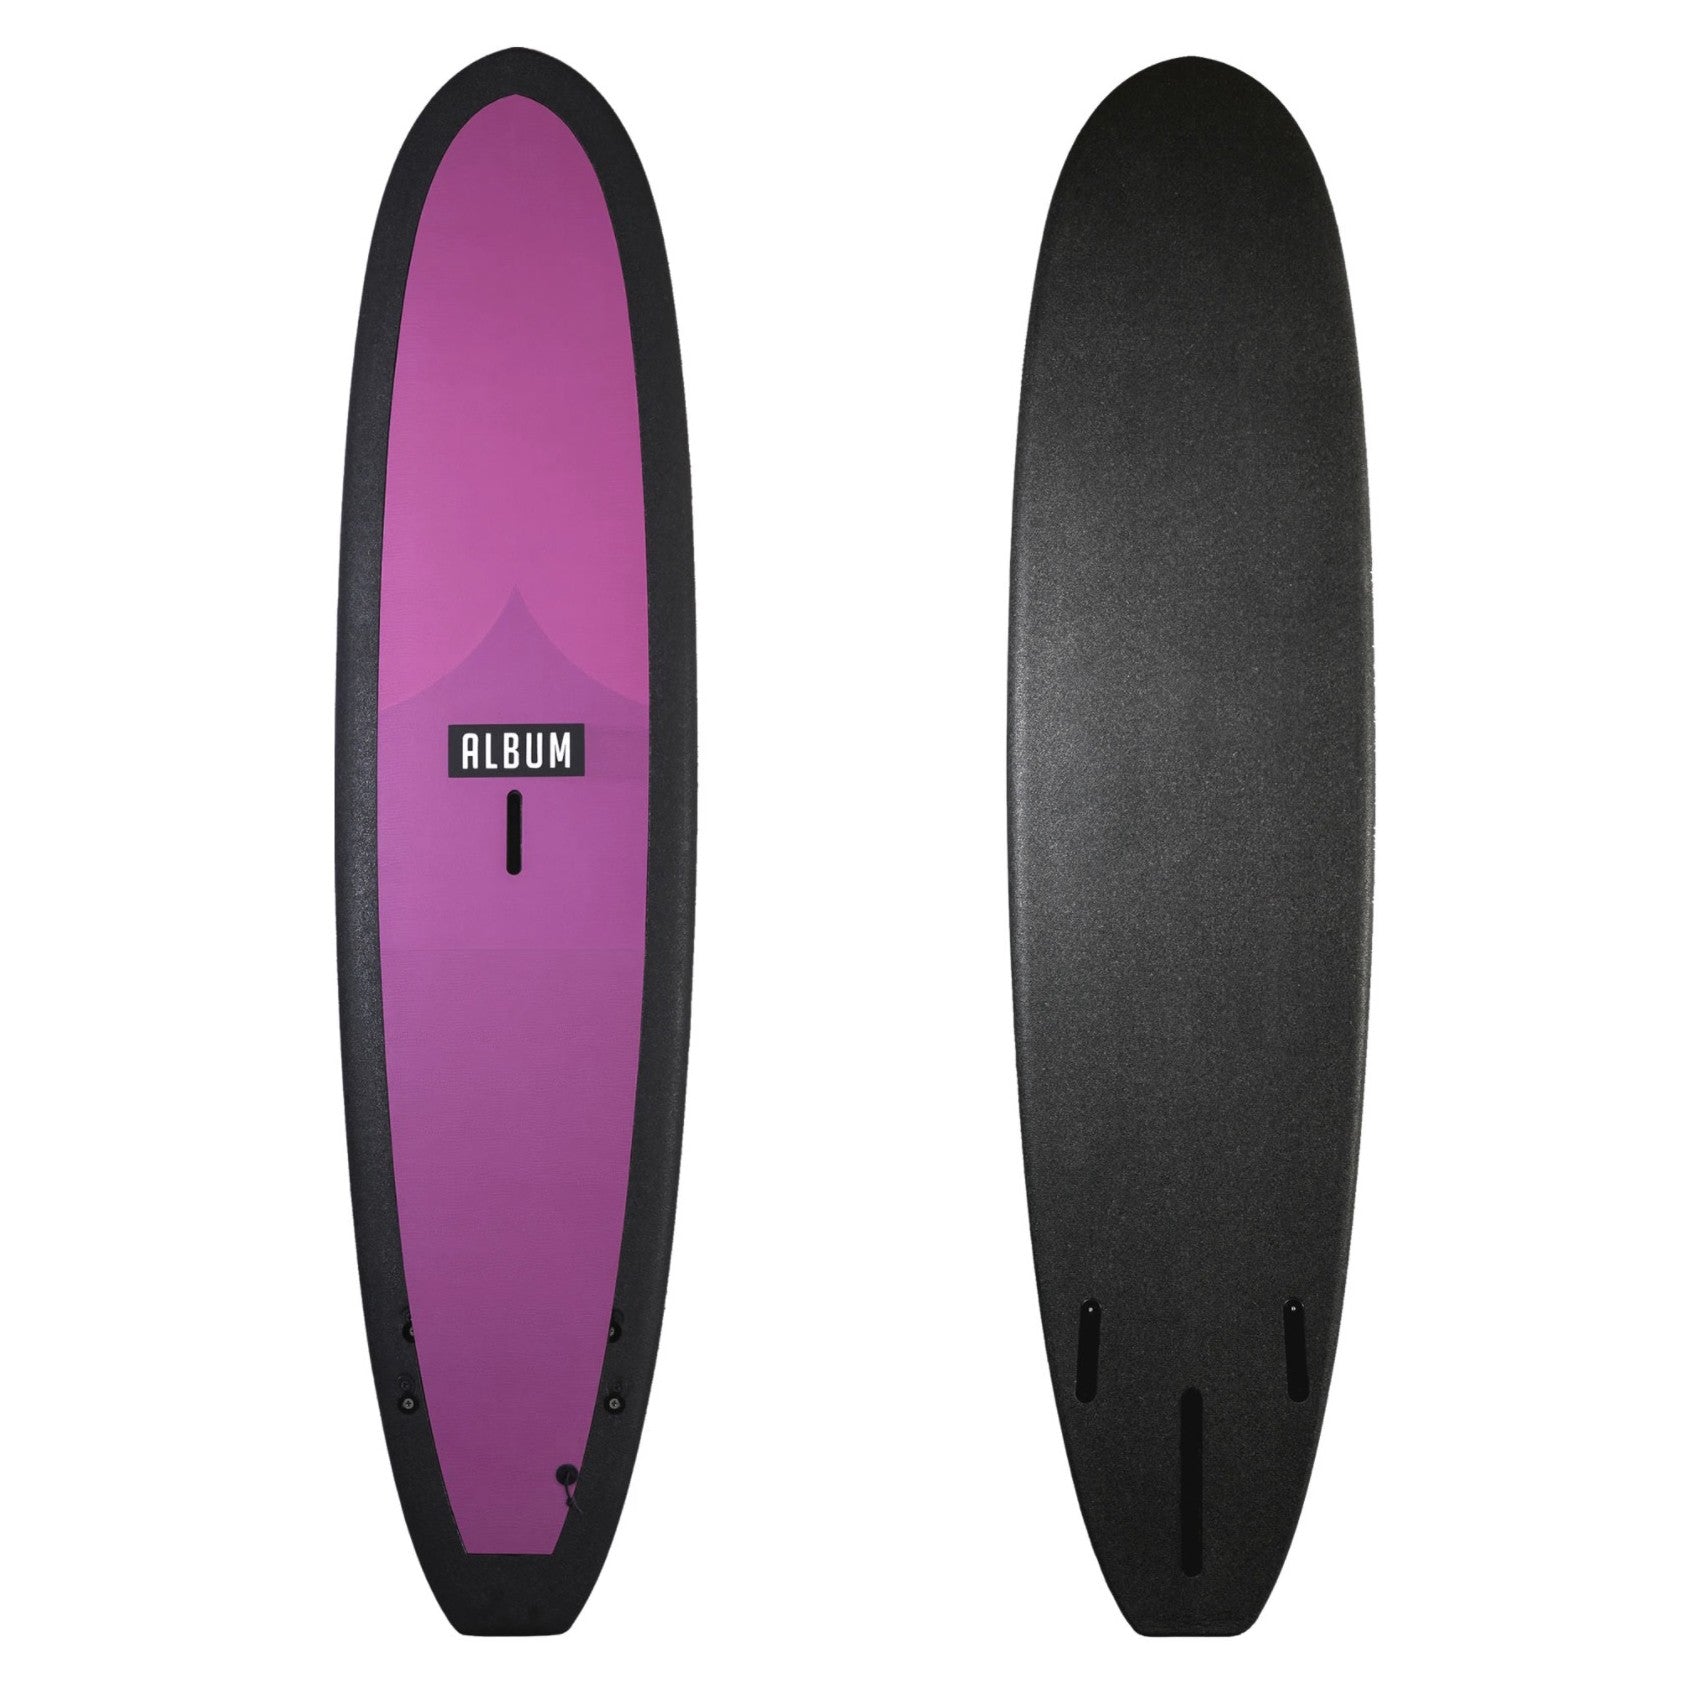 ALBUM Surfboards - Kookalog 7'11 Soft Top - Magenta